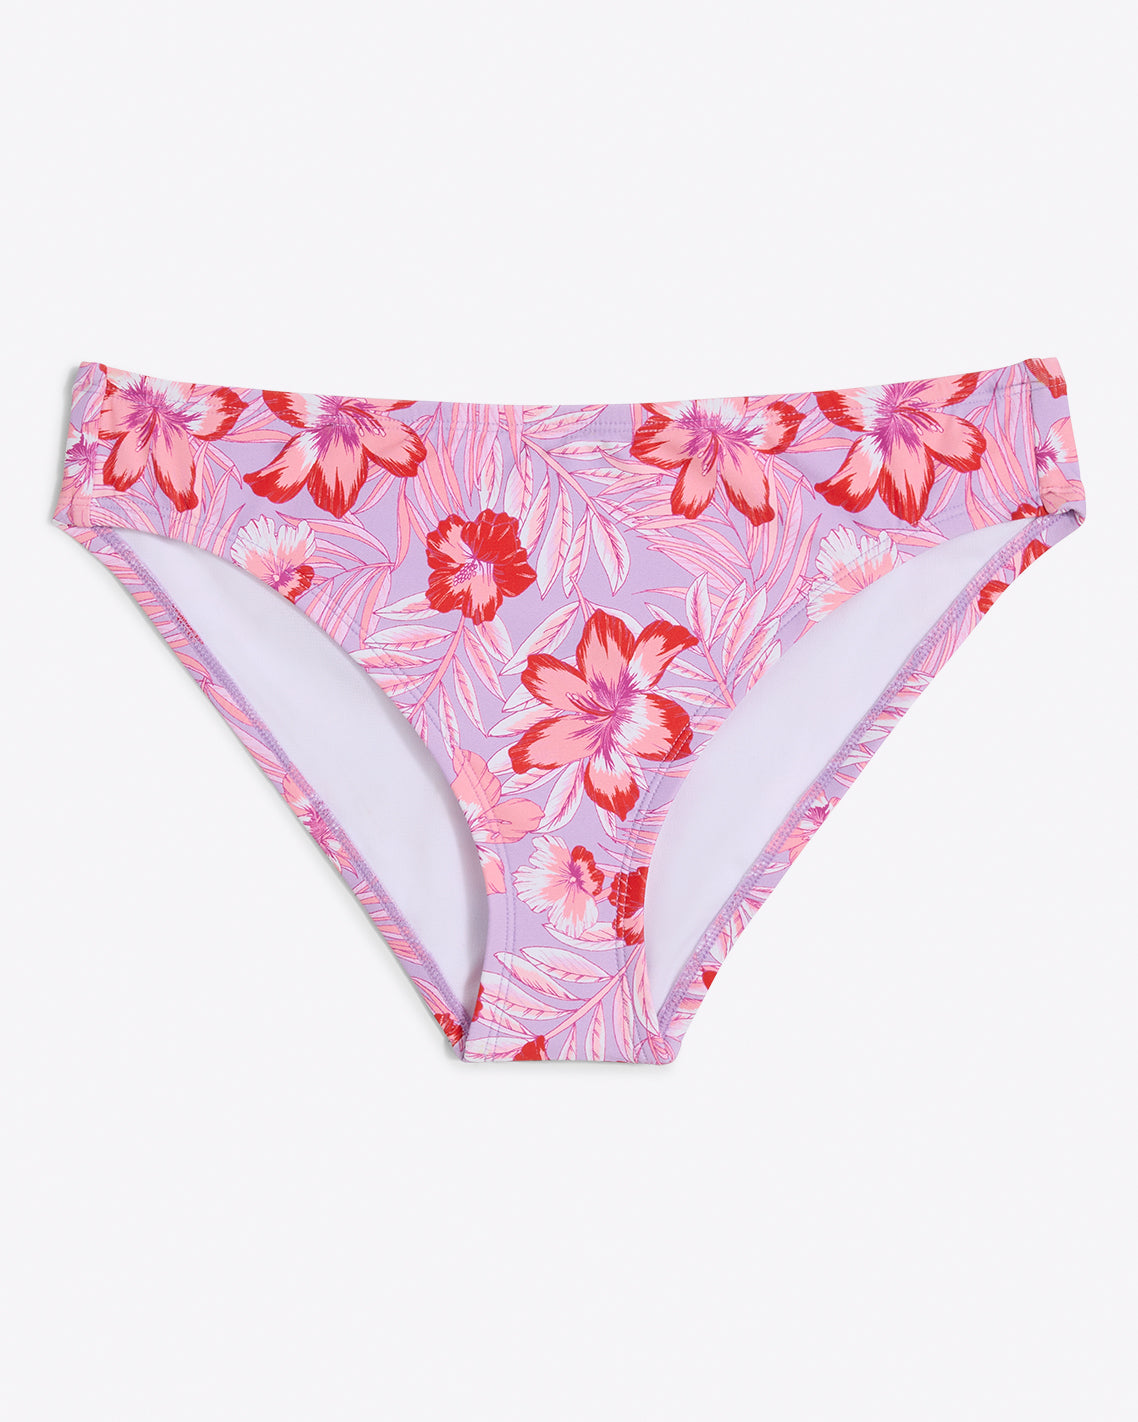 Basic Hipster Bikini Bottom in Floral Scallop